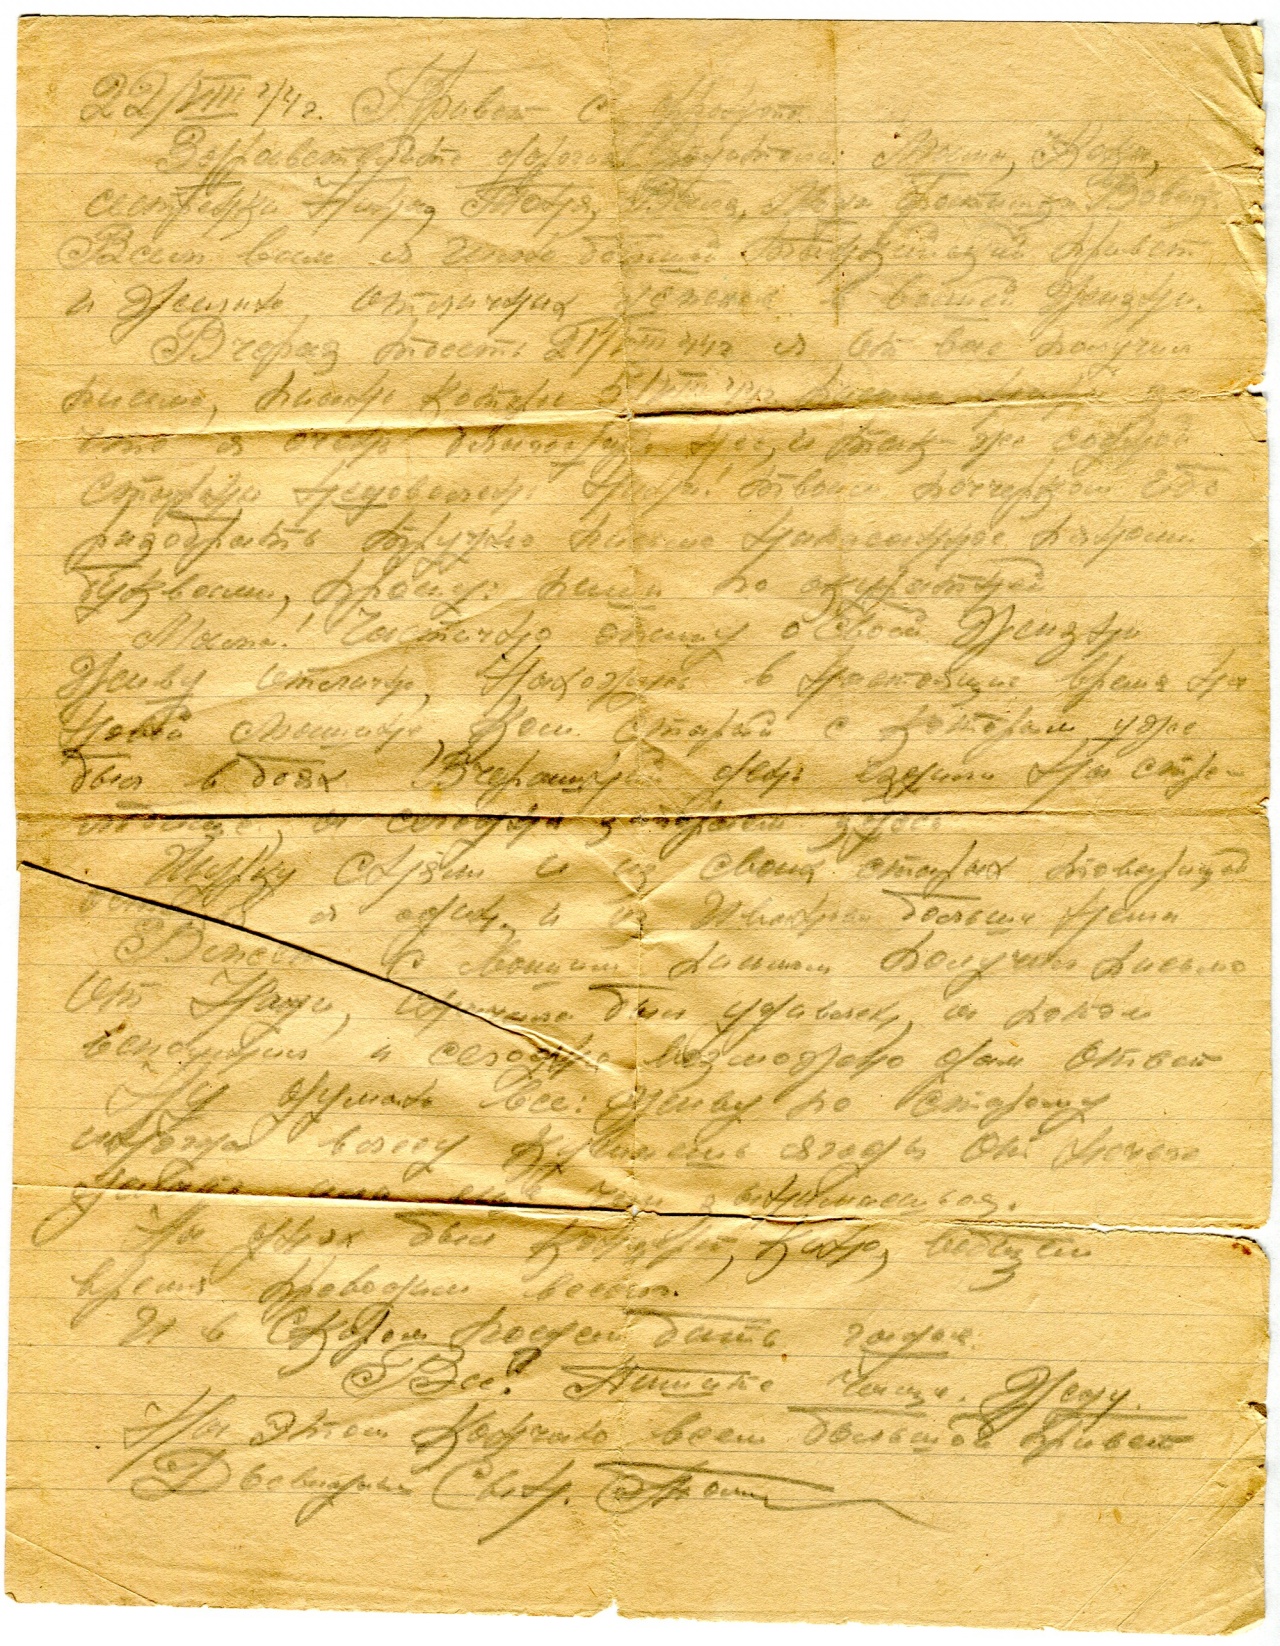 Следующее письмо небольшое по объему, написано на одной стороне разлинованного тетрадного листа.